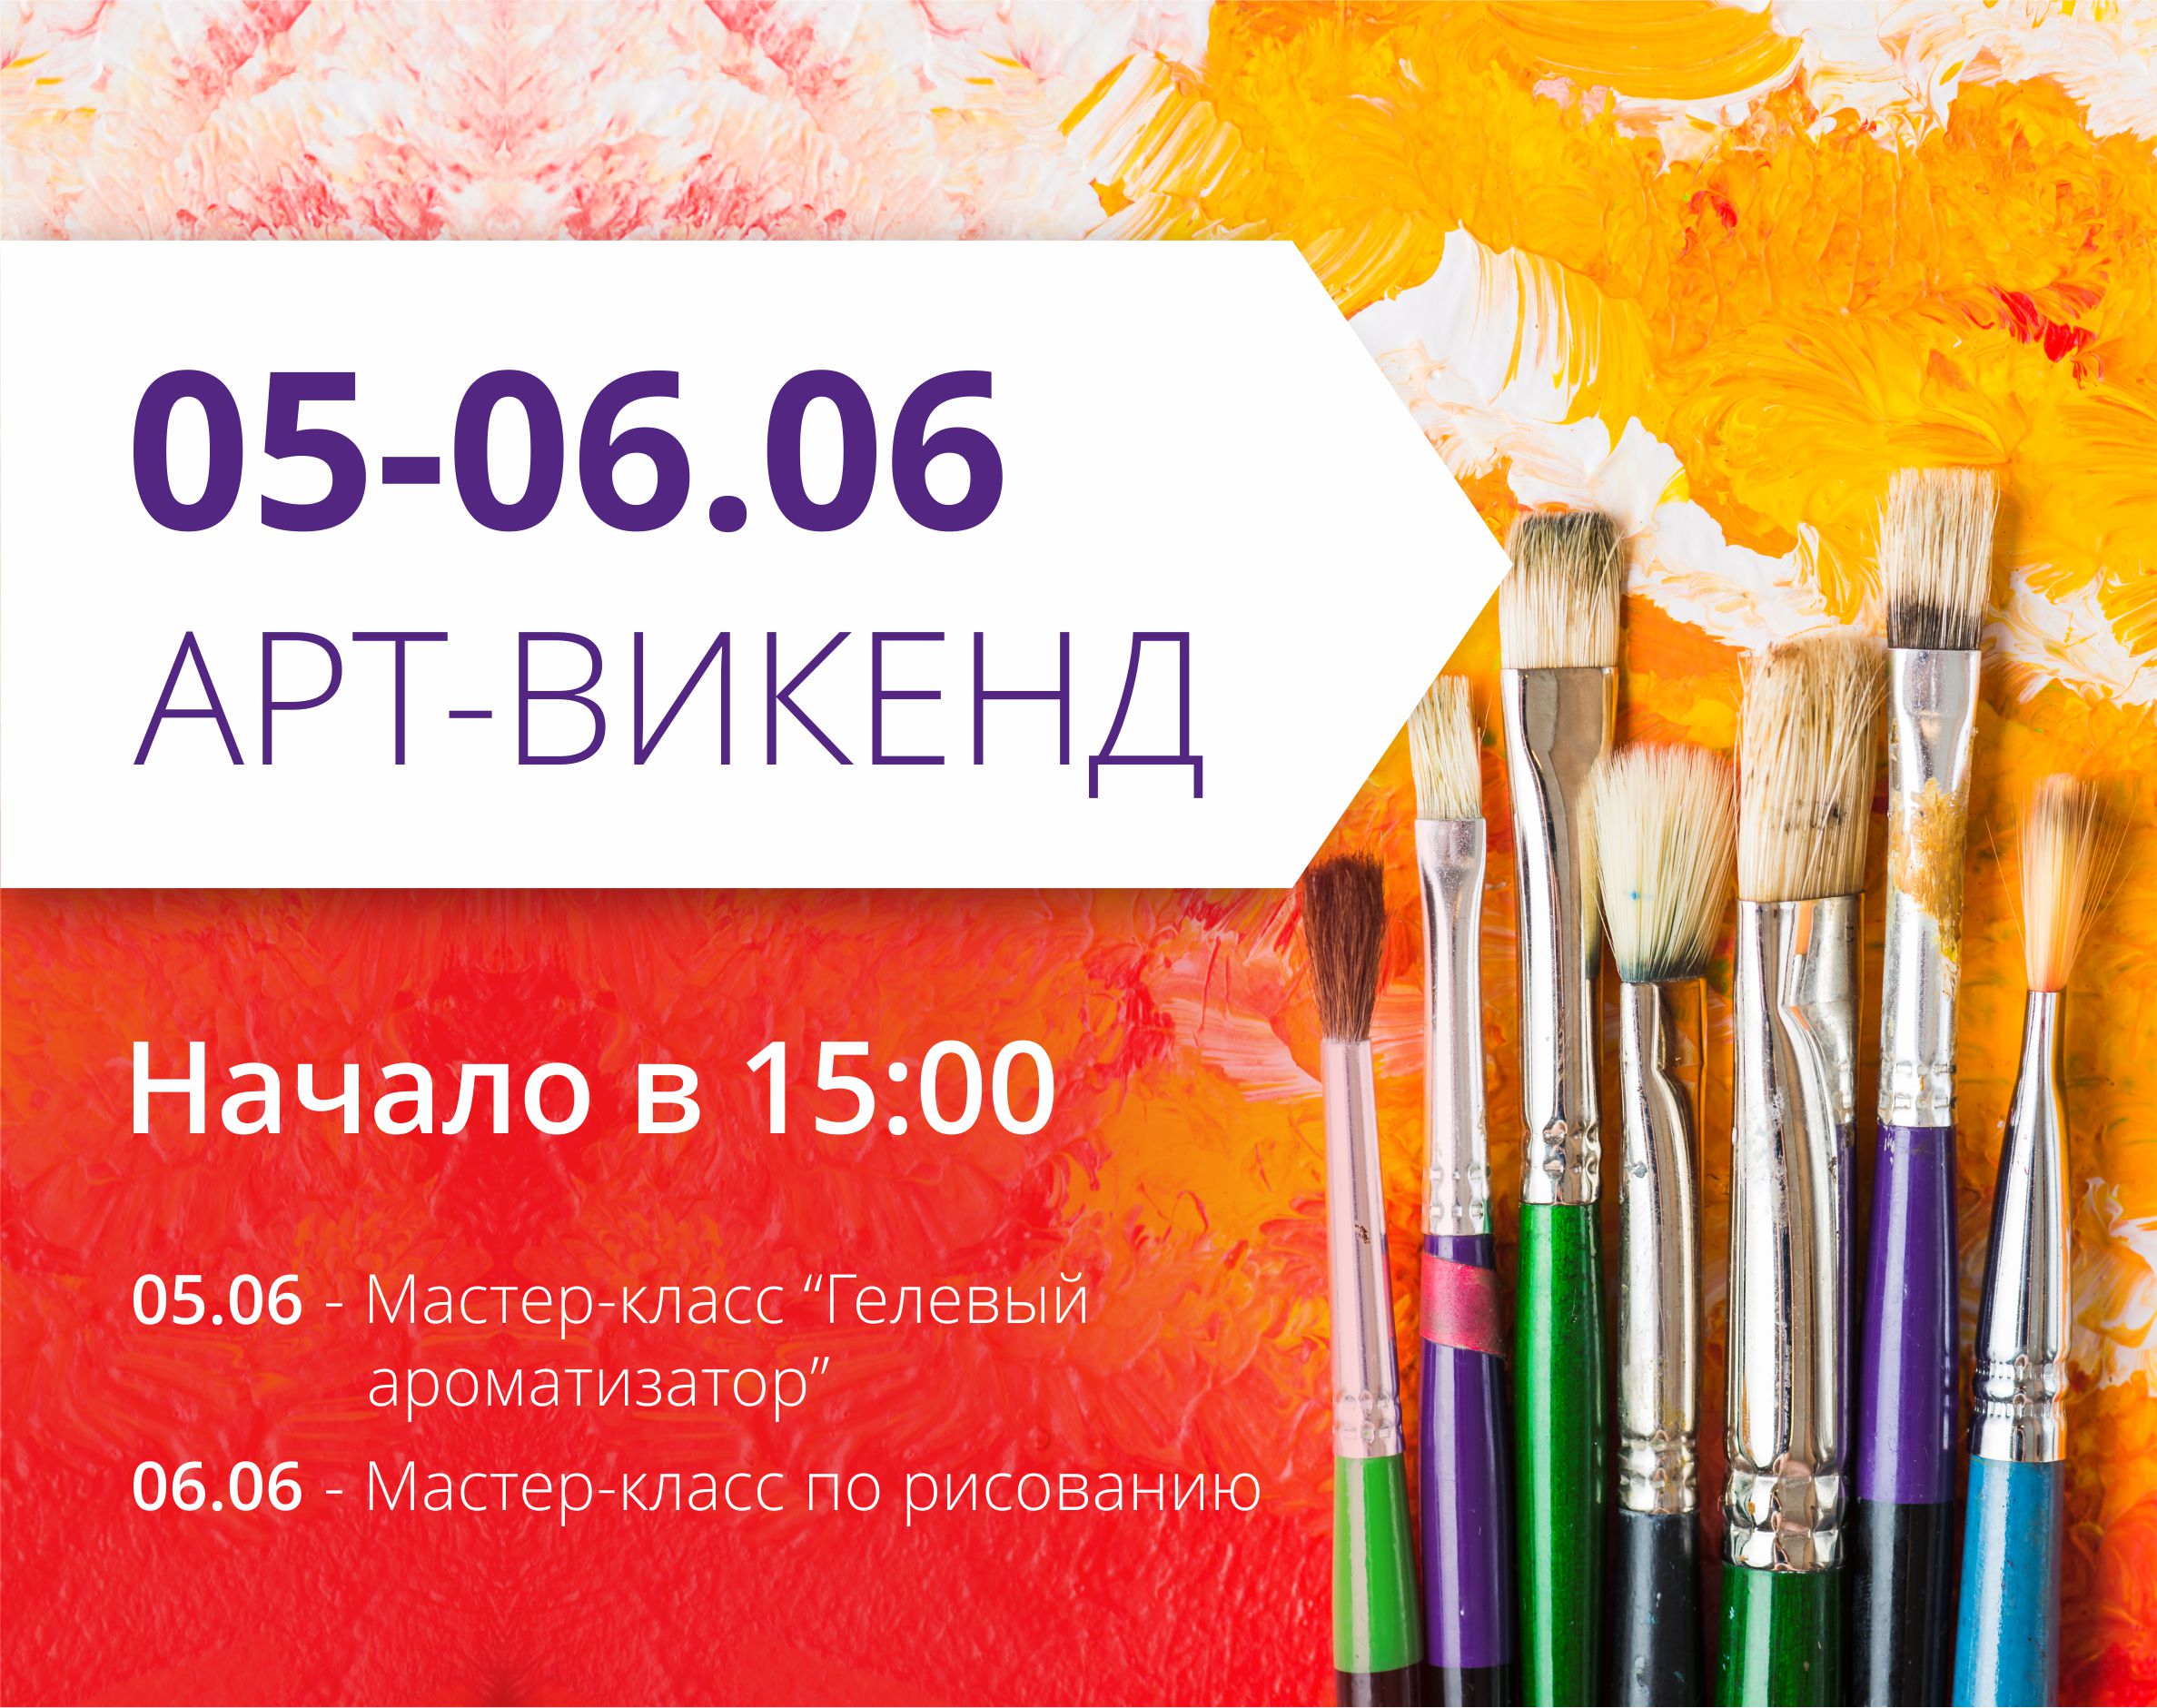 ТРЦ "Любава" приглашает на арт-викенд!